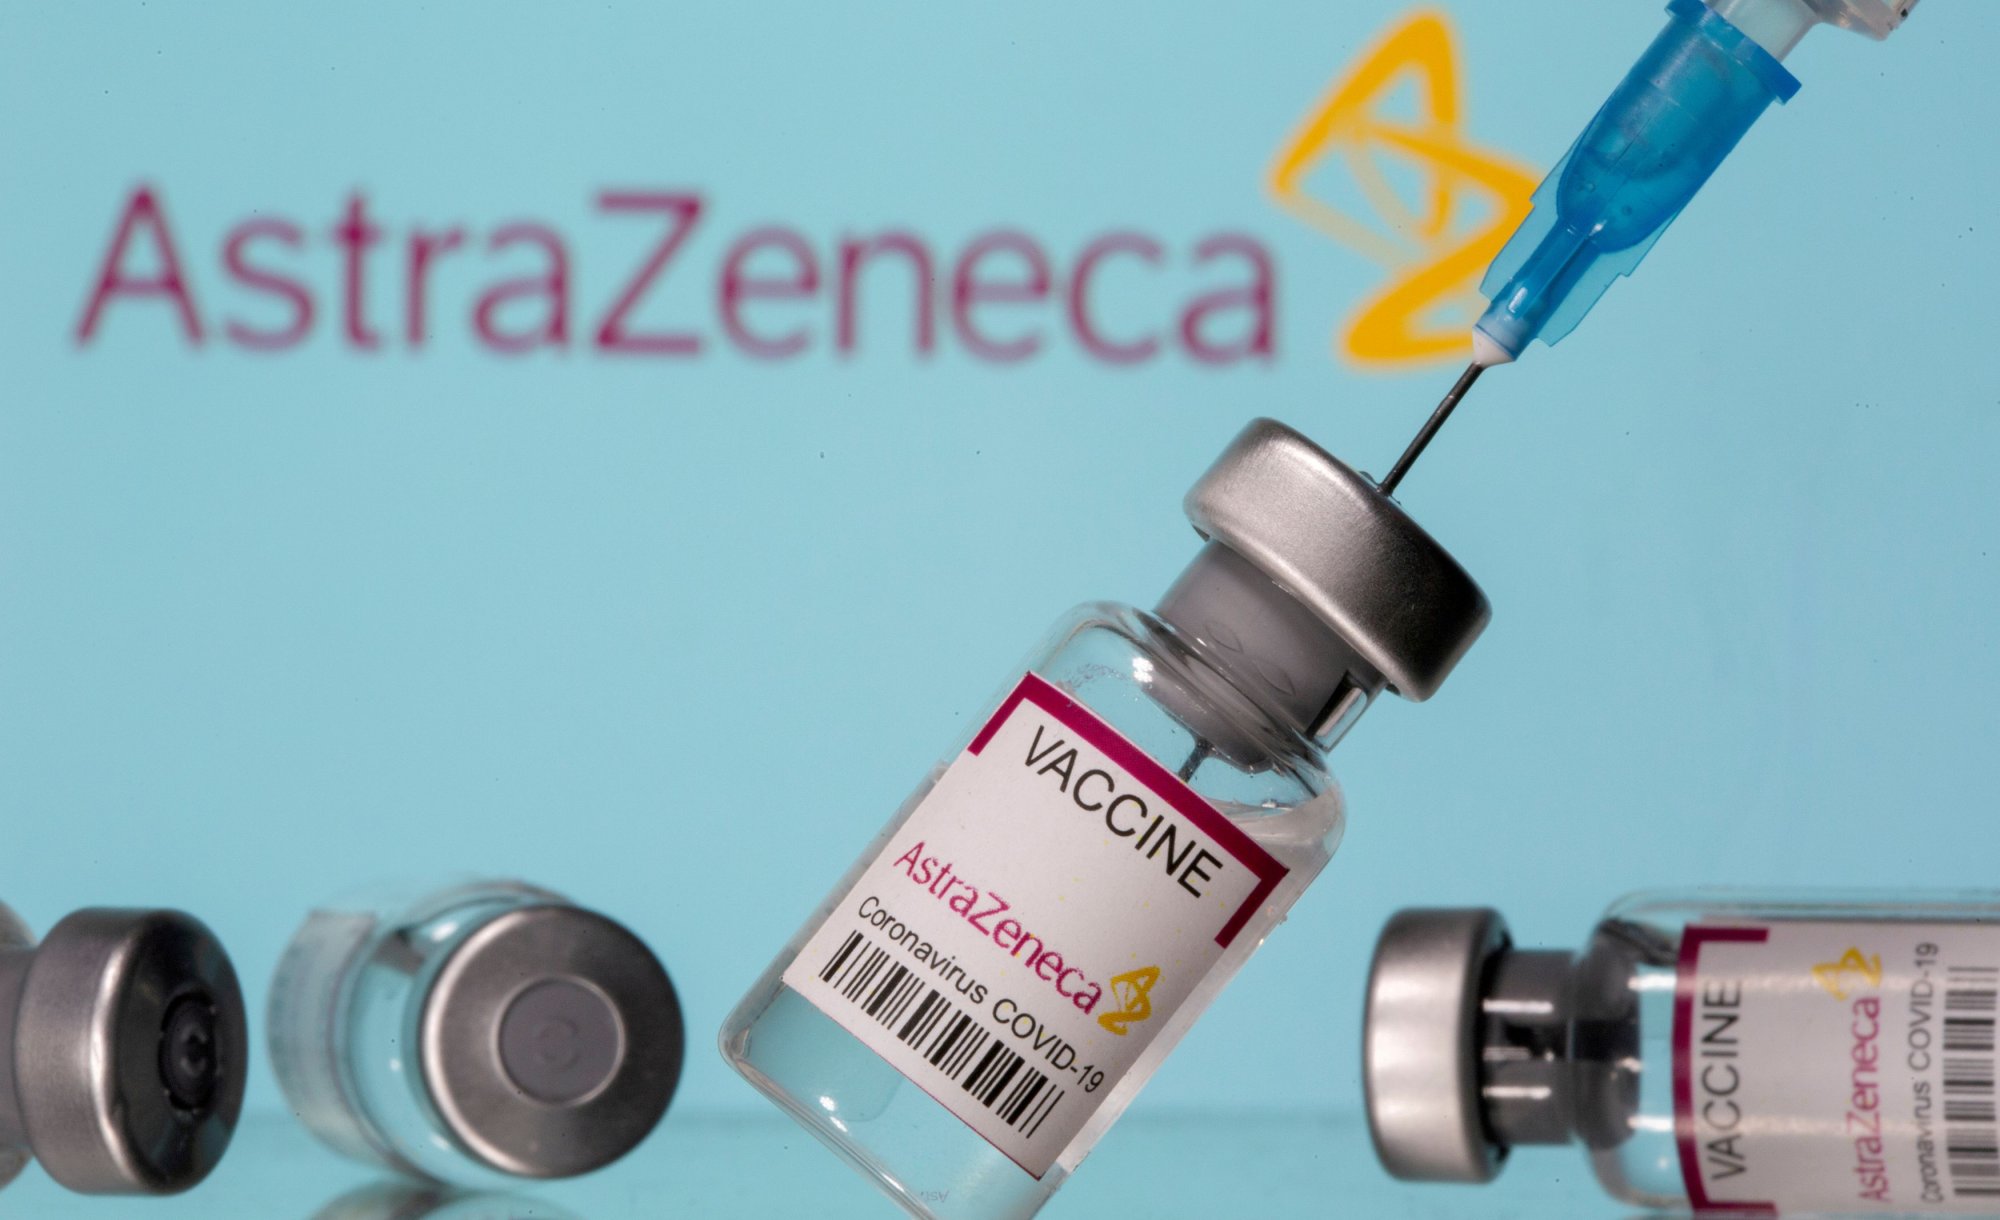 ΑstraZeneca: Τι λένε οι ειδικοί για όσους έκαναν το εμβόλιο κατά του κορονοϊού μετά την απόσυρση